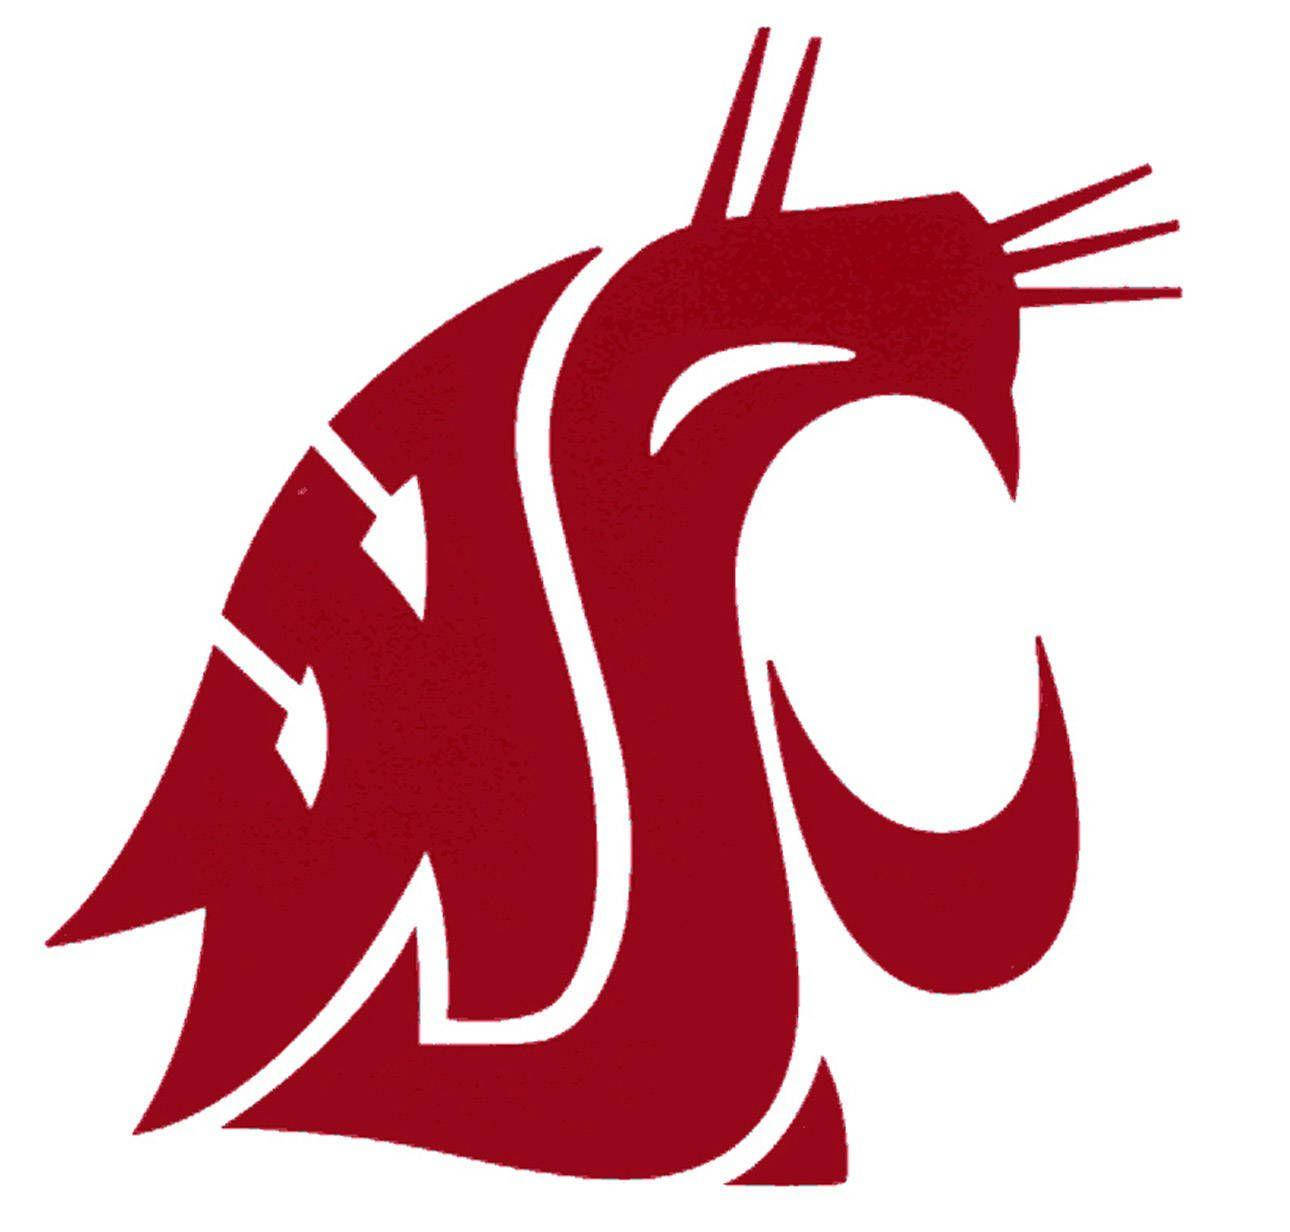 Big Red Cougars Logo Washington State University Wallpaper